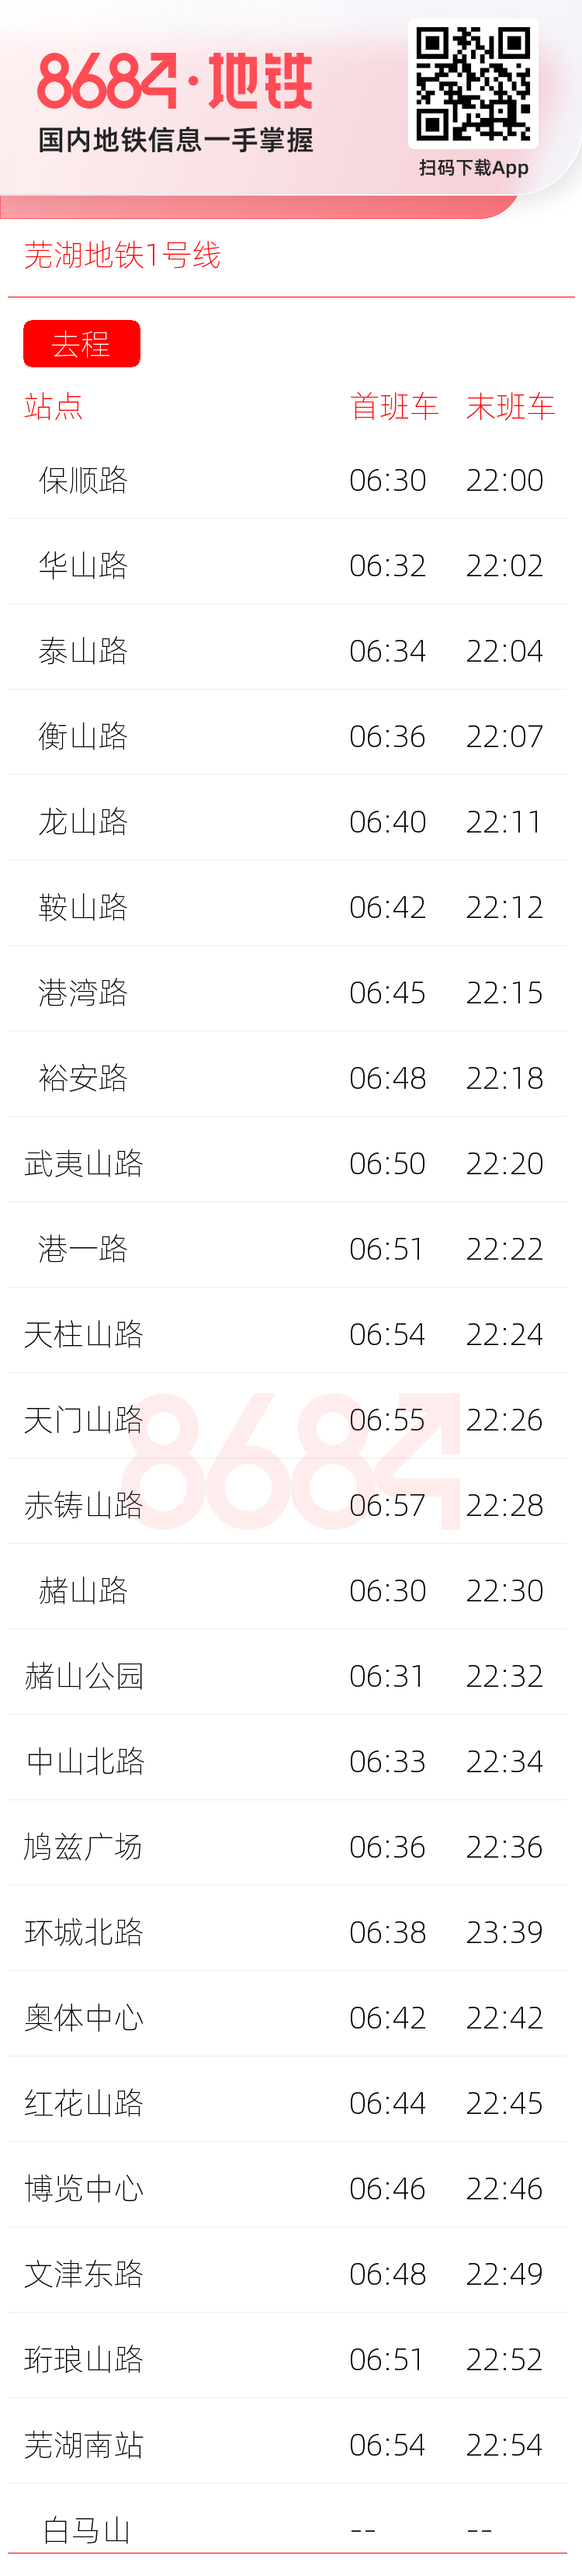 芜湖地铁1号线运营时间表